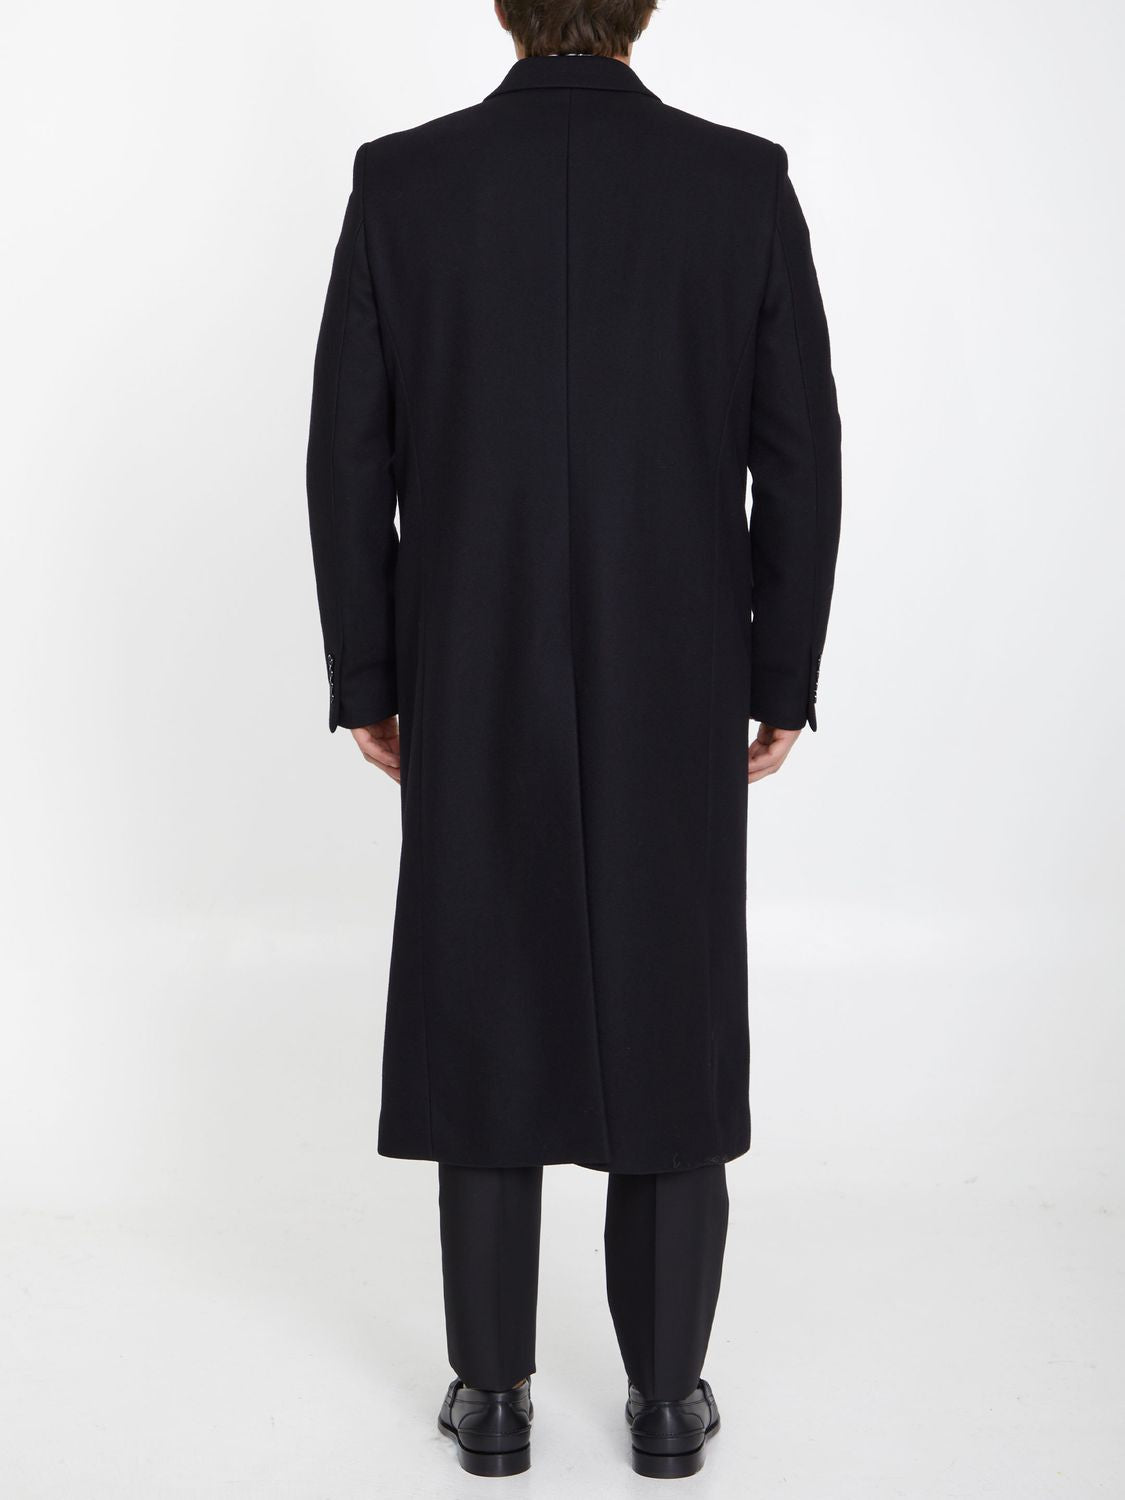 Áo khoác nam đen đôi dáng dài từ wool